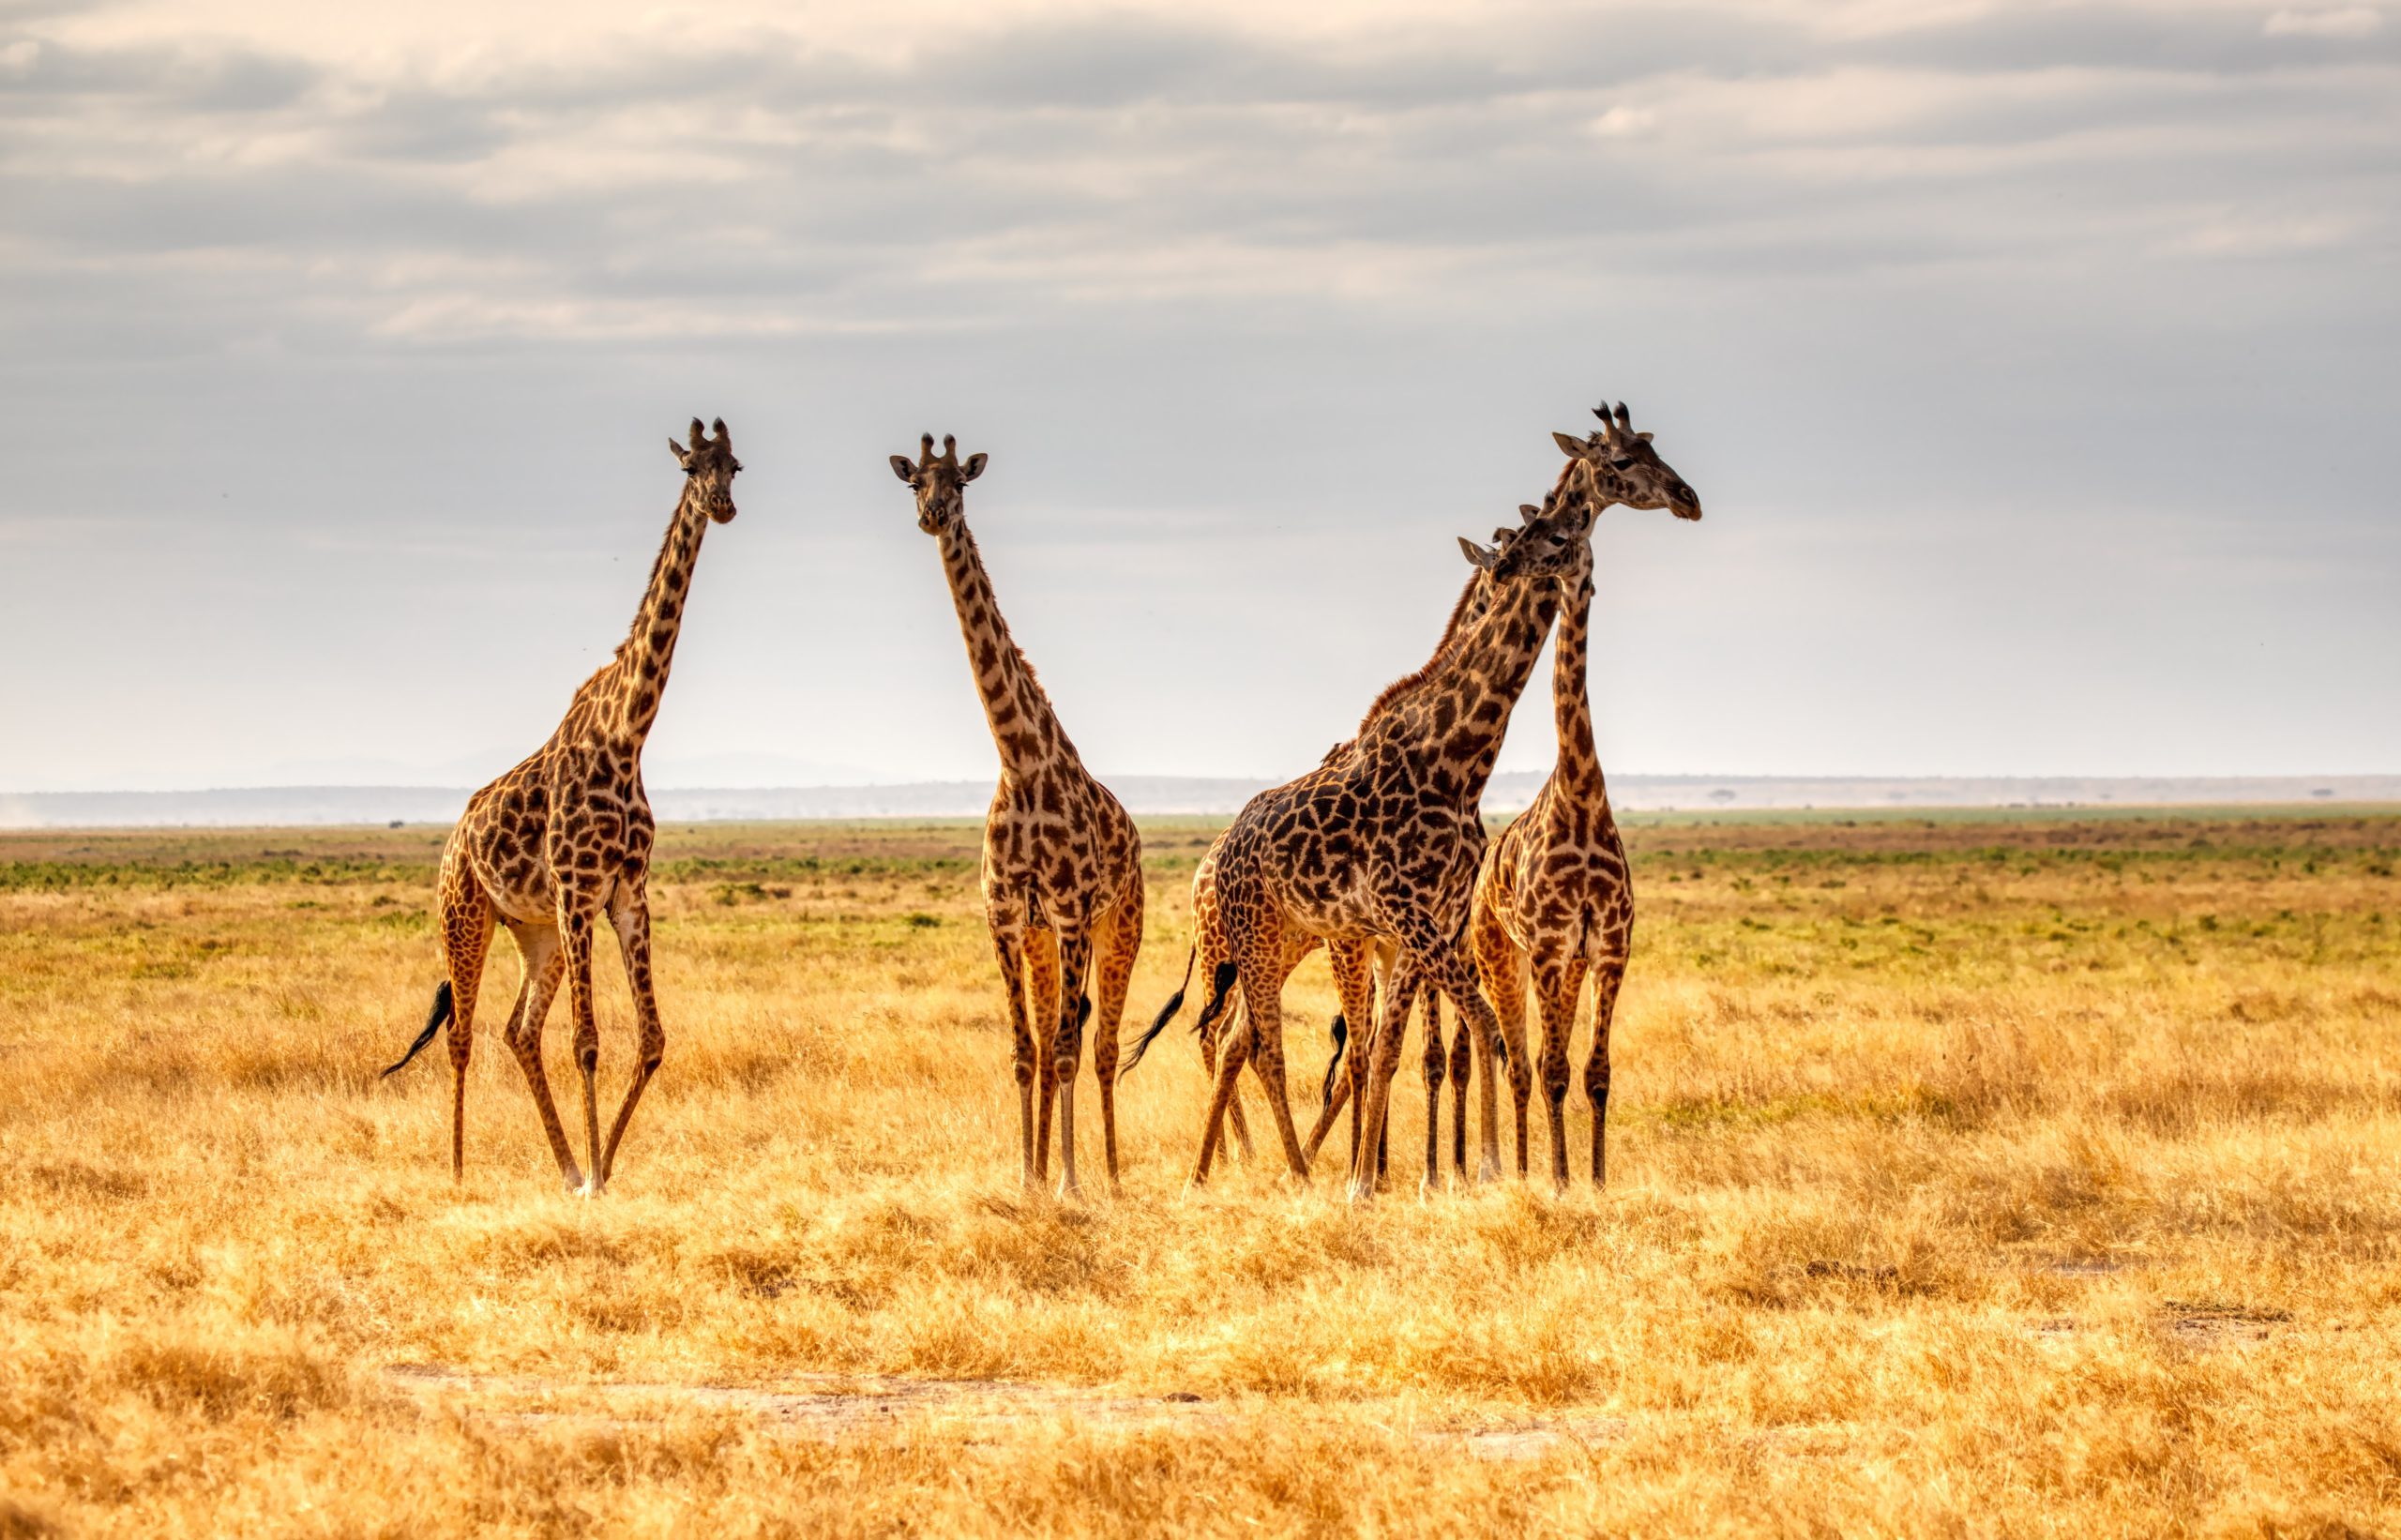 a small herd of giraffes in the african desert